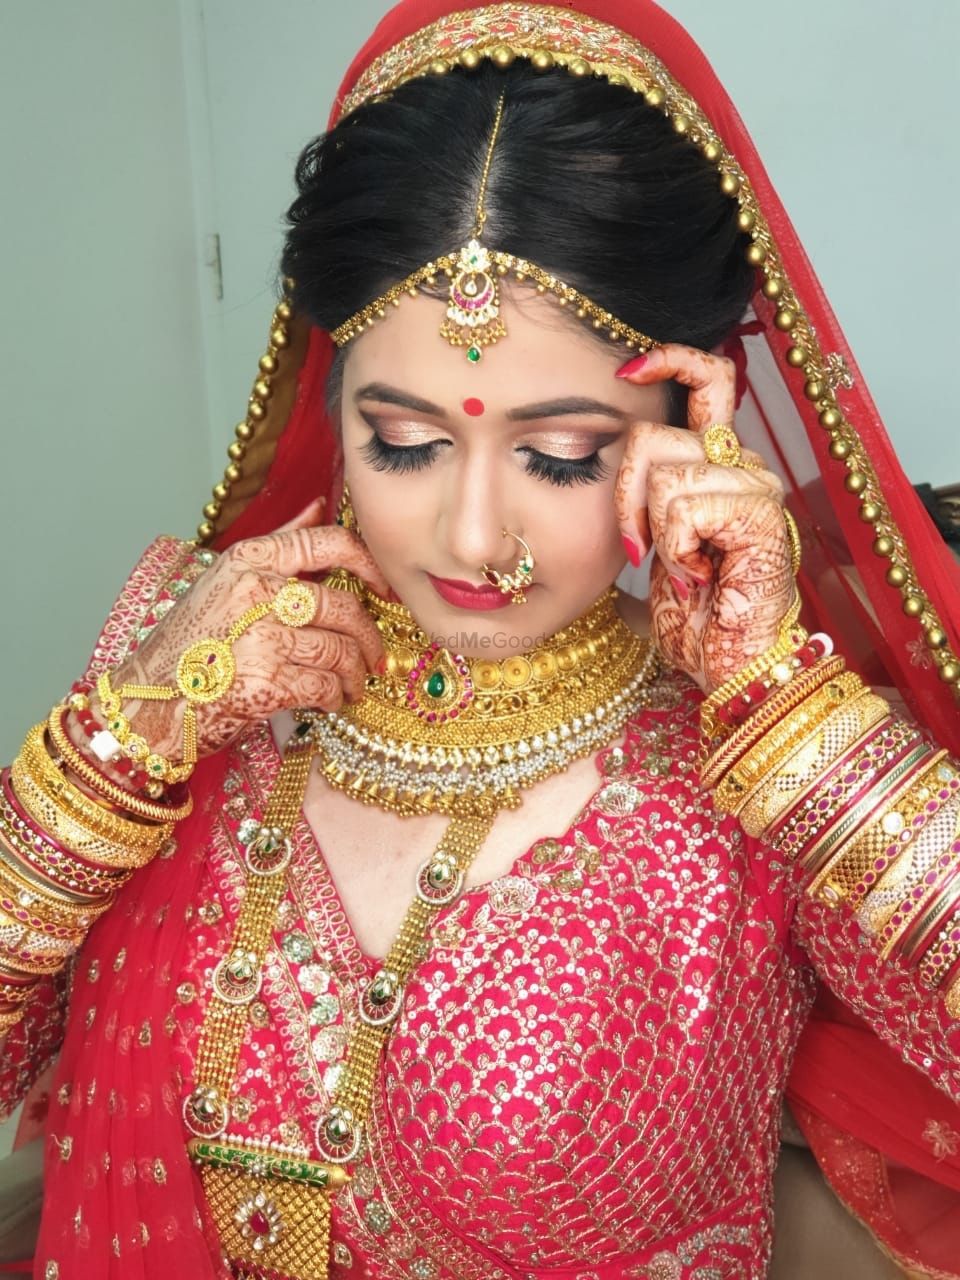 Photo By Parul's Beauty Care - Bridal Makeup